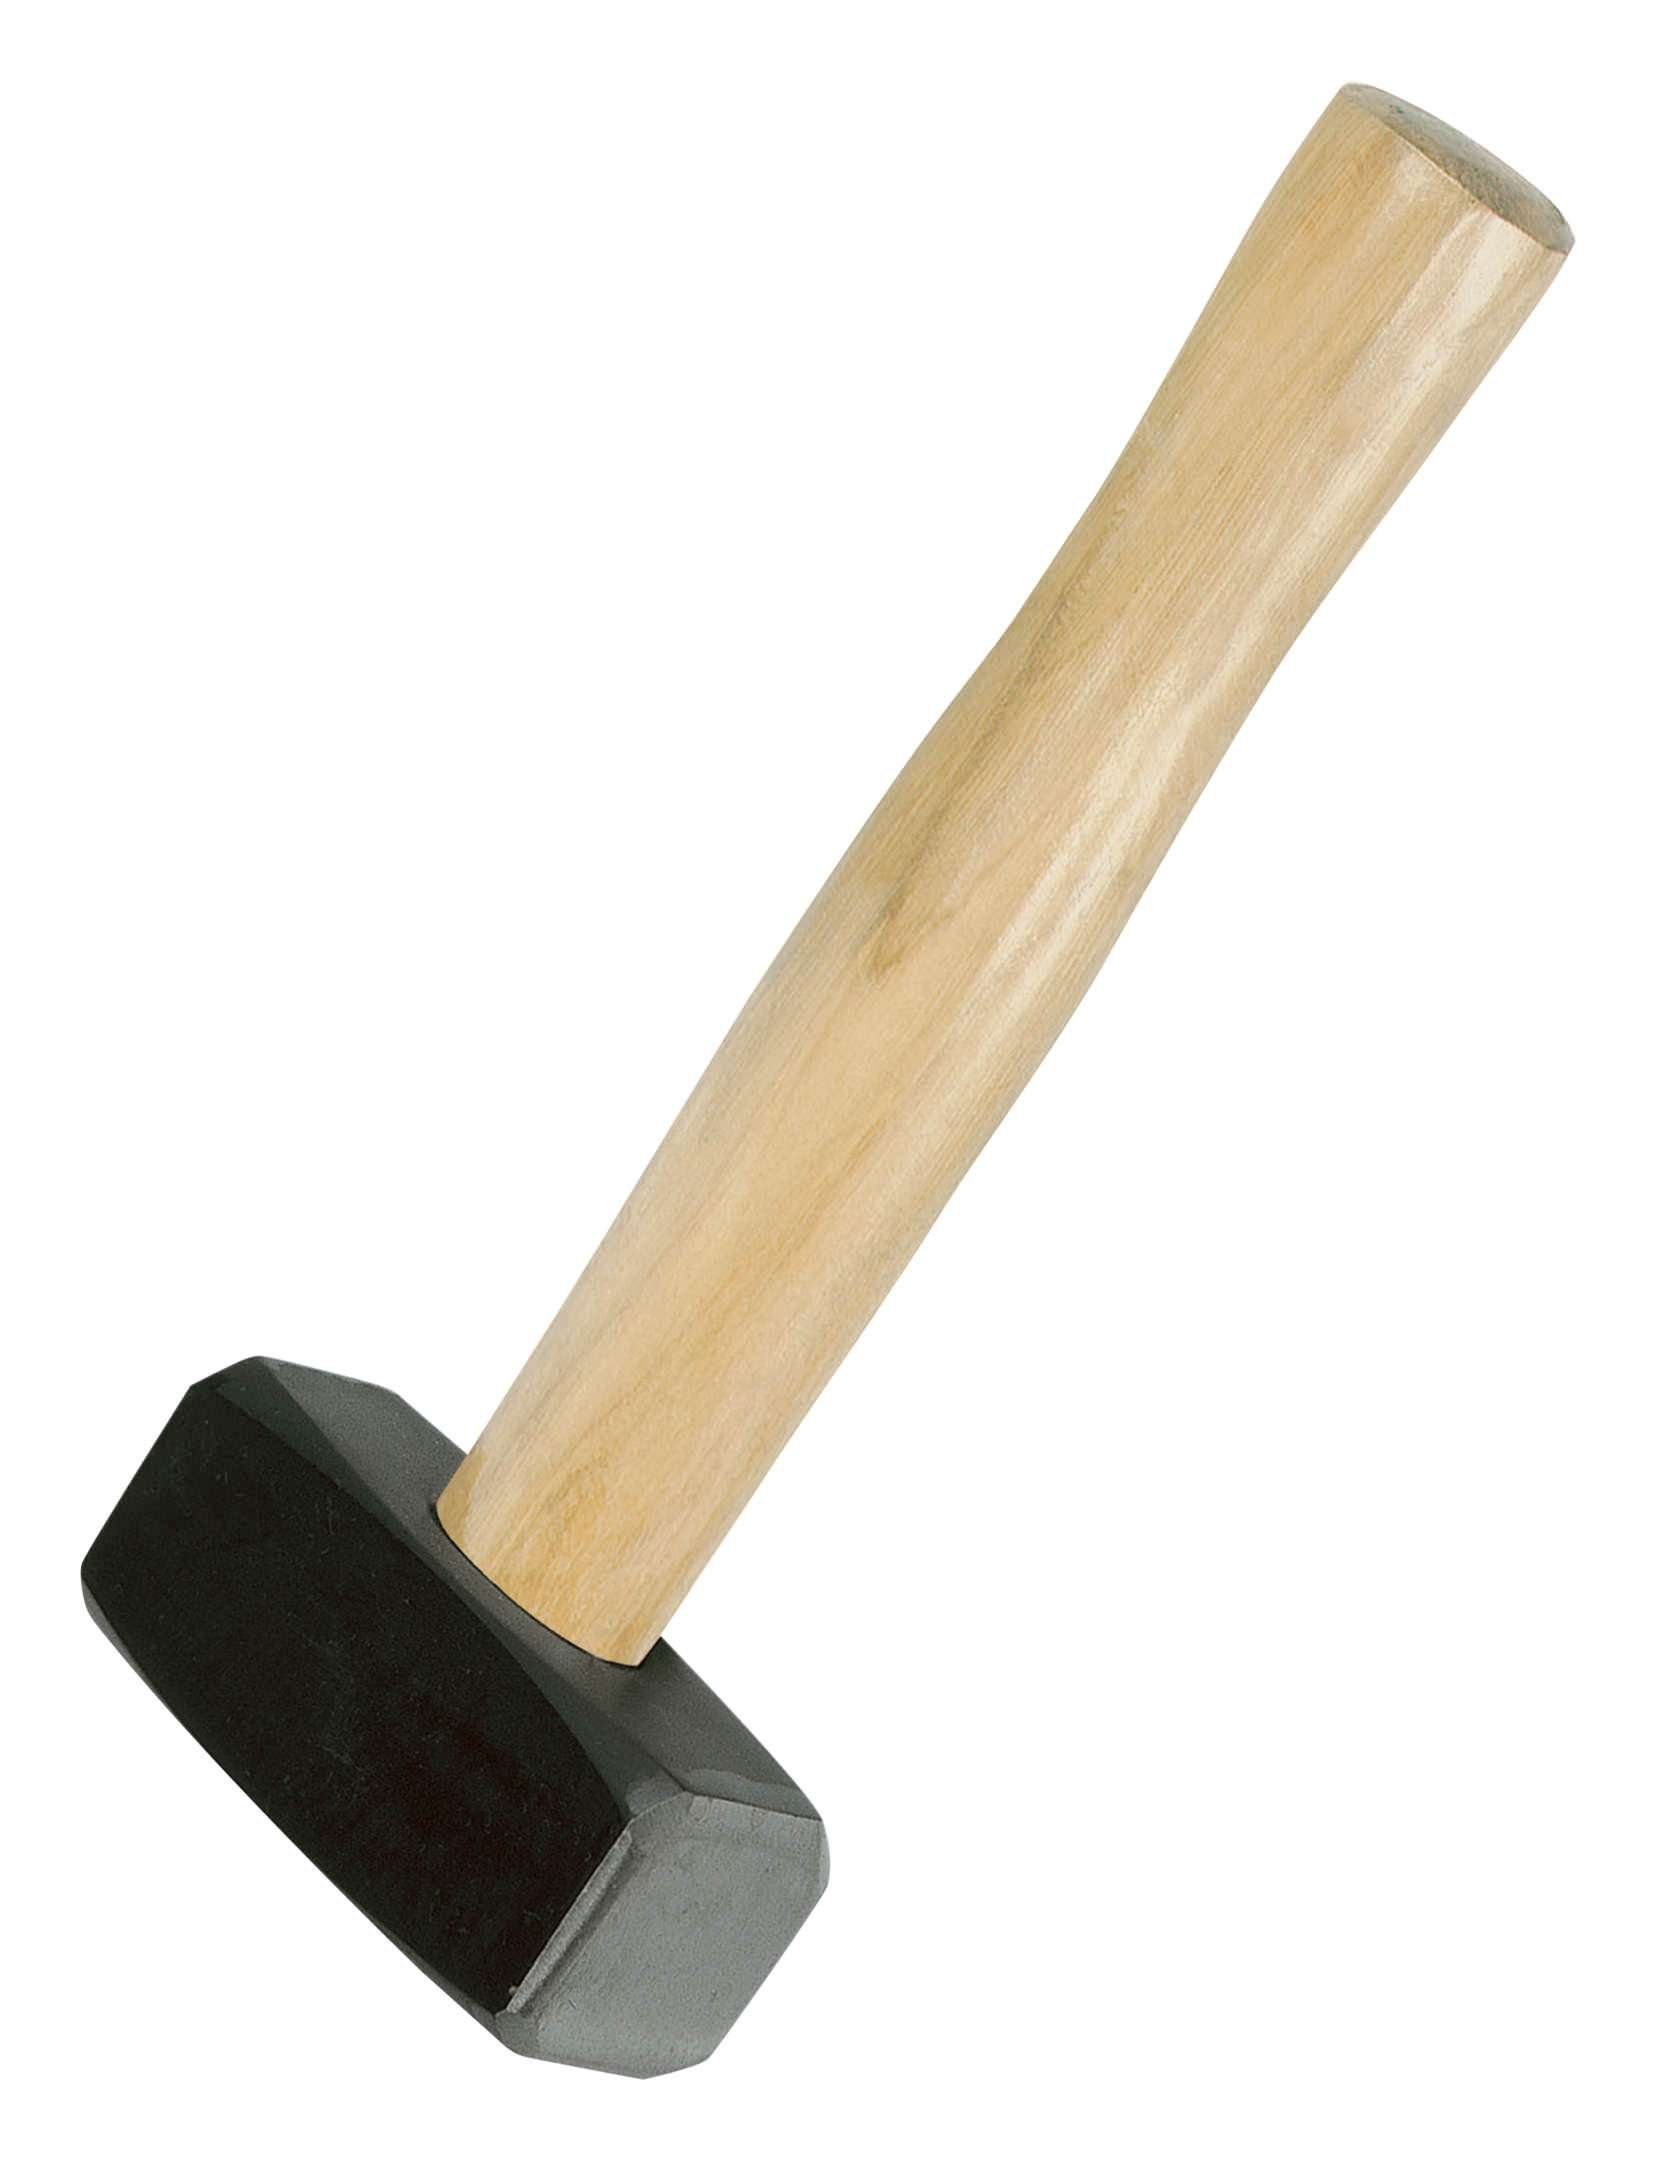 IDEALSPATEN Hammer, Handfäustel 1500 g